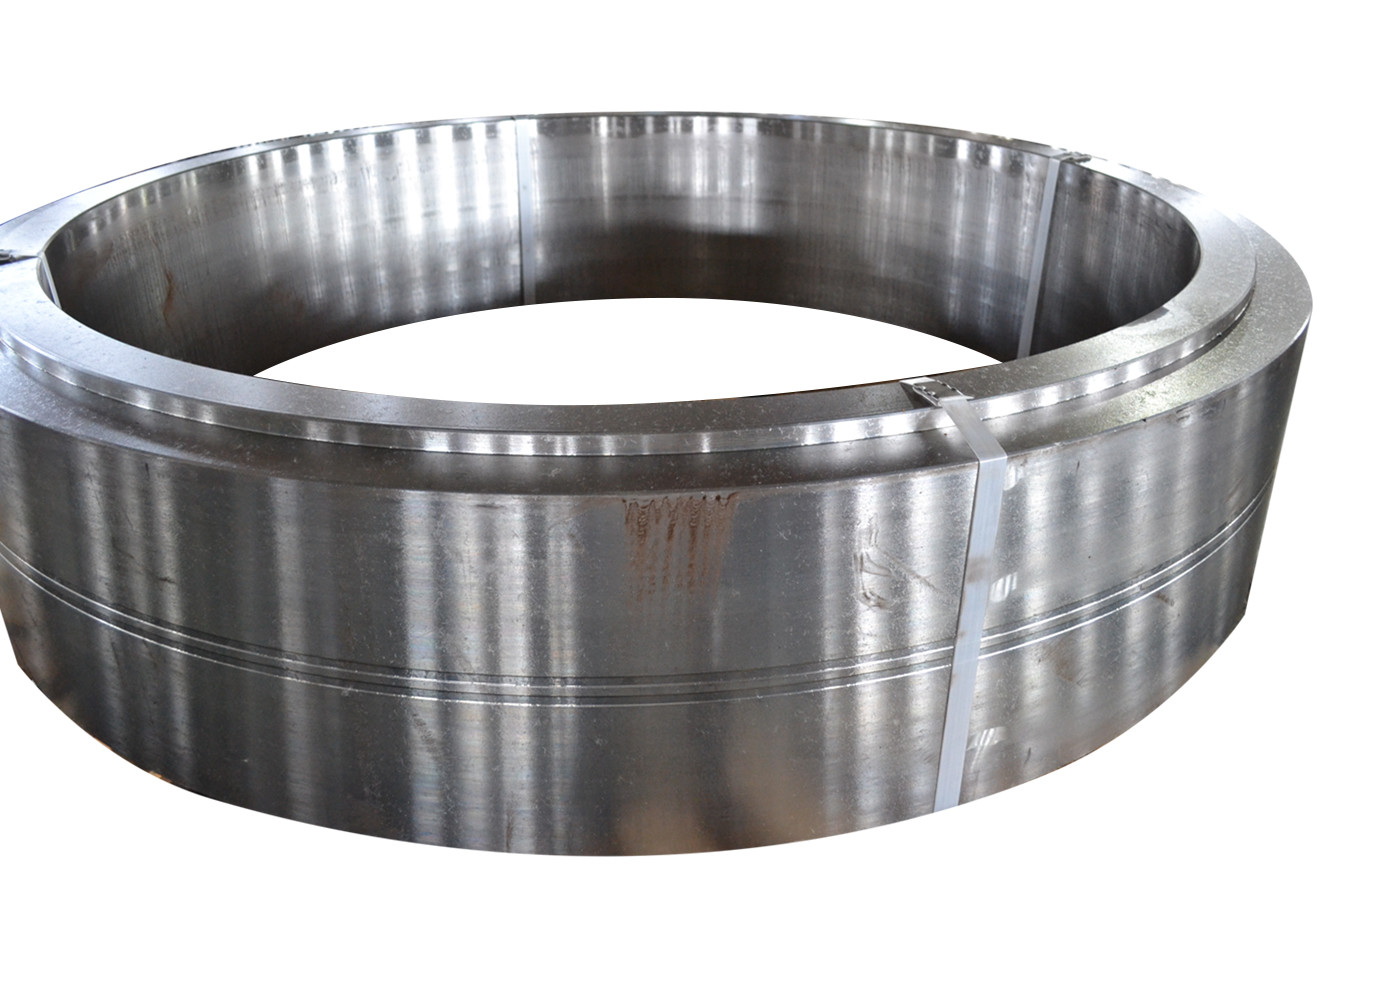 Ringen van het metallurgieasme SUS302 1,4307 de Gesmede Staal